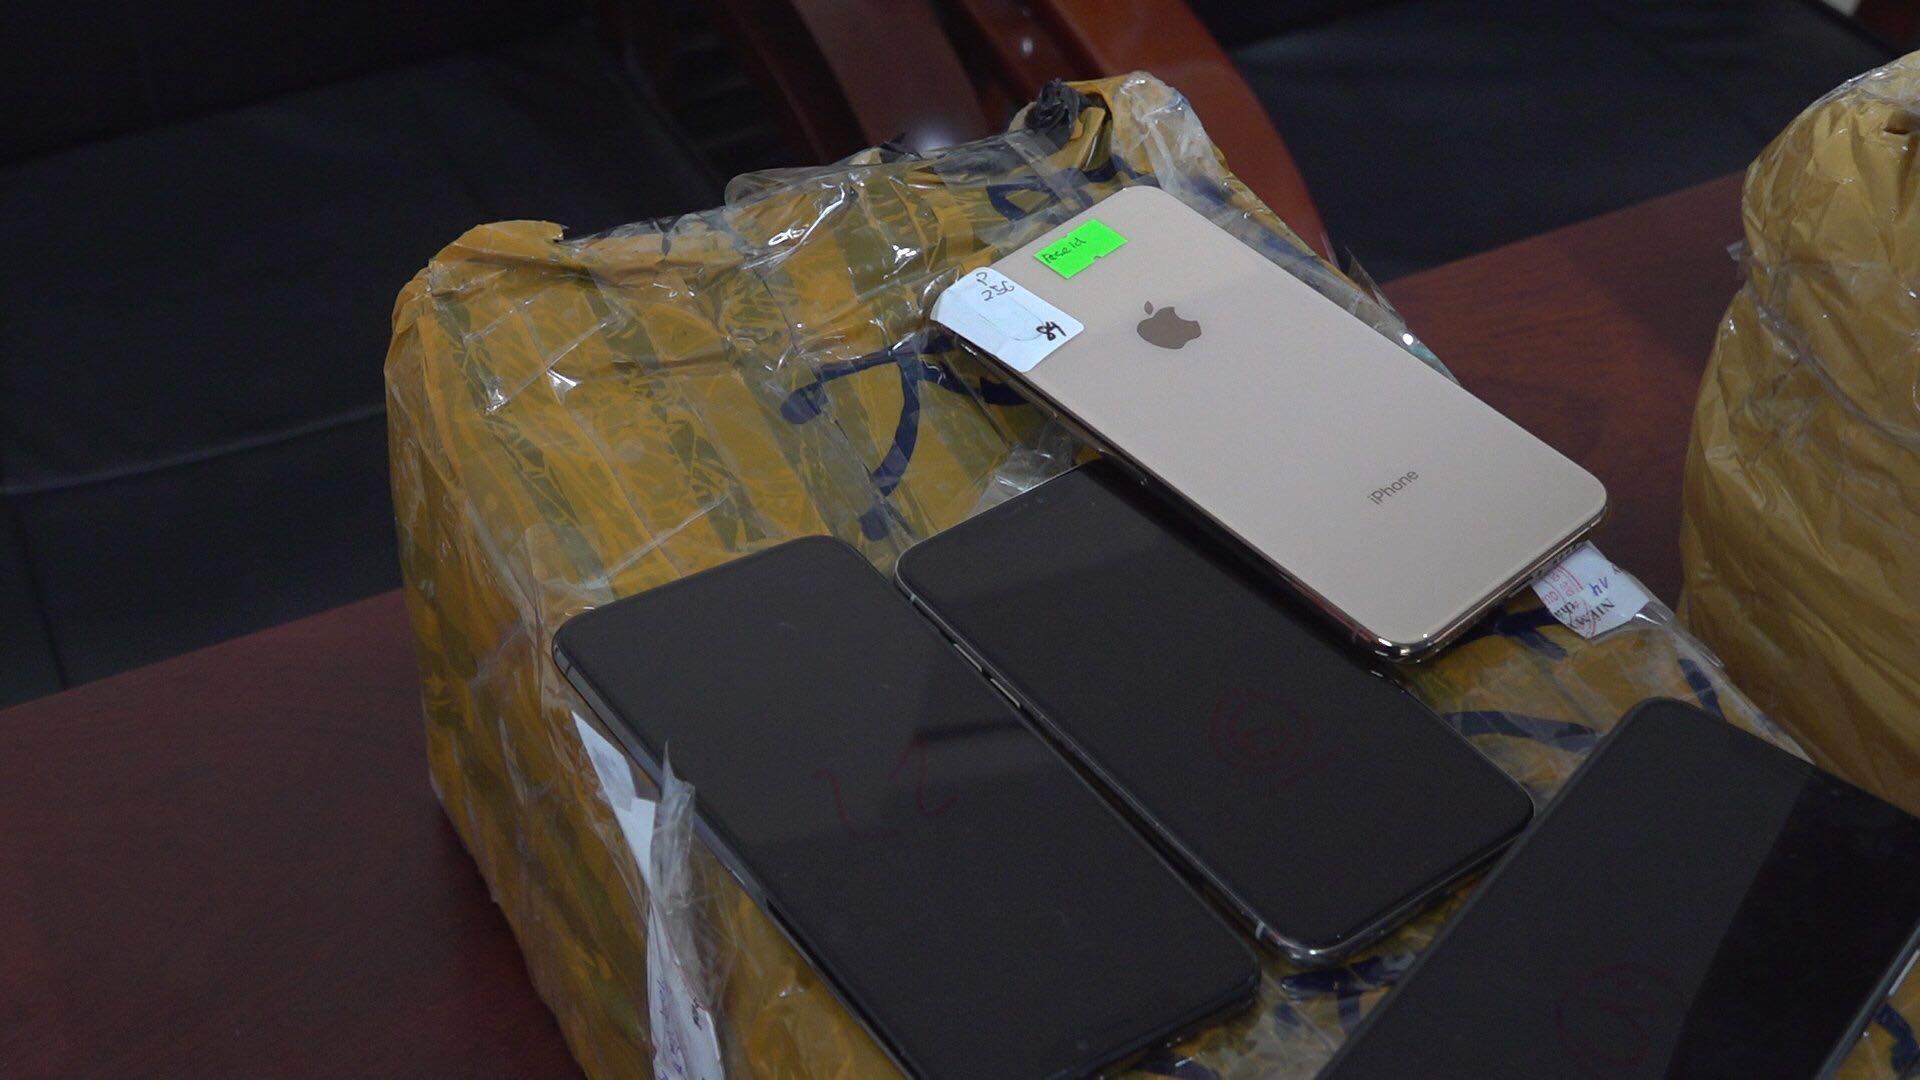 Tạm giữ hơn 500 chiếc Iphone trên tàu hỏa chưa xác định được chủ - Ảnh 2.